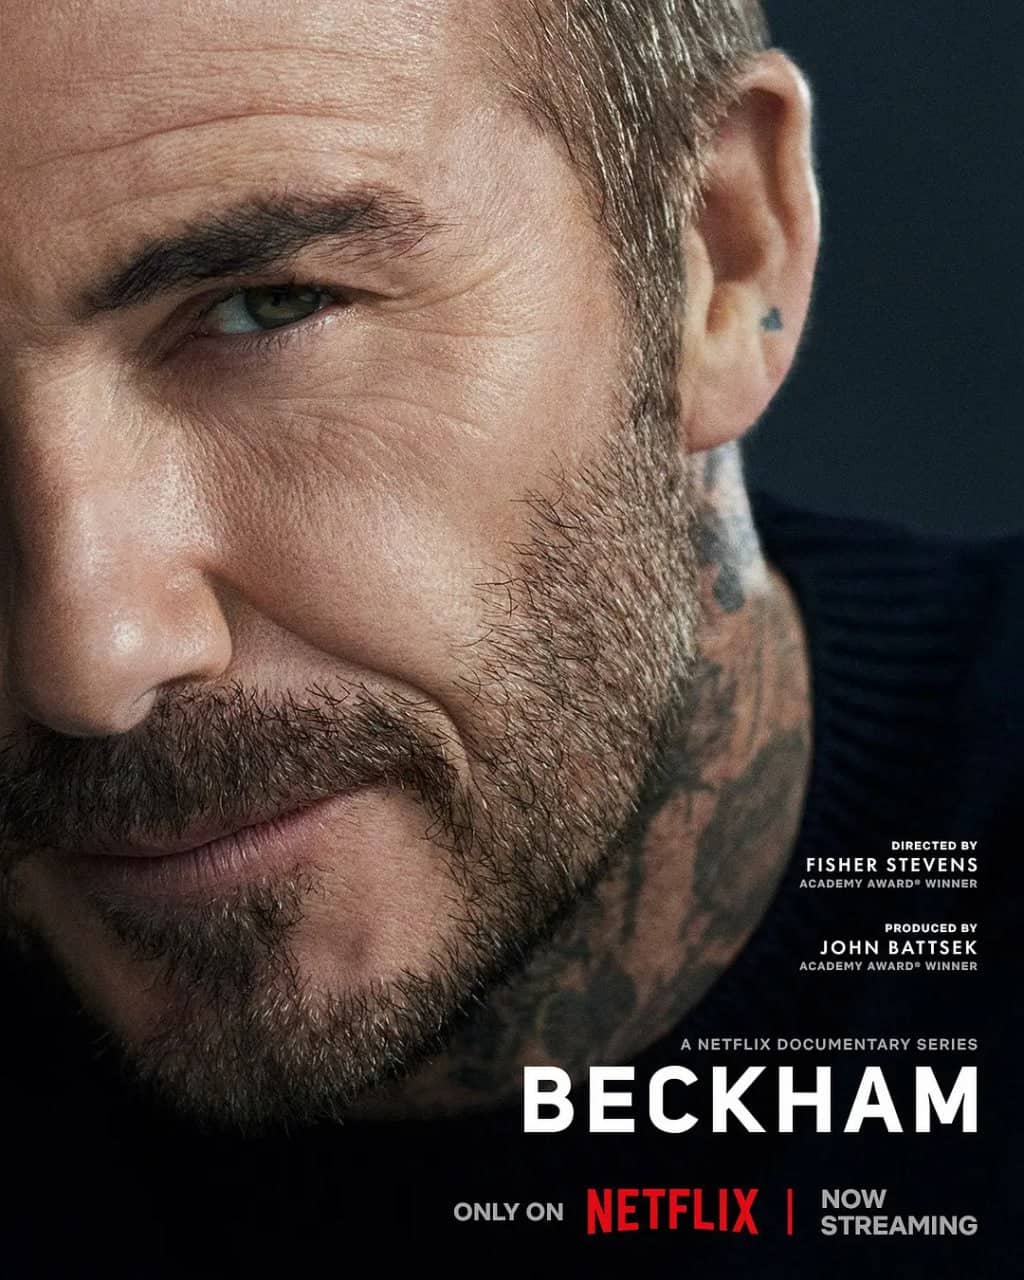 贝克汉姆 Beckham (2023) 2160p HDR&amp;DV 内封简英特效&amp;繁英特效双语 【高分传记】【刮削】